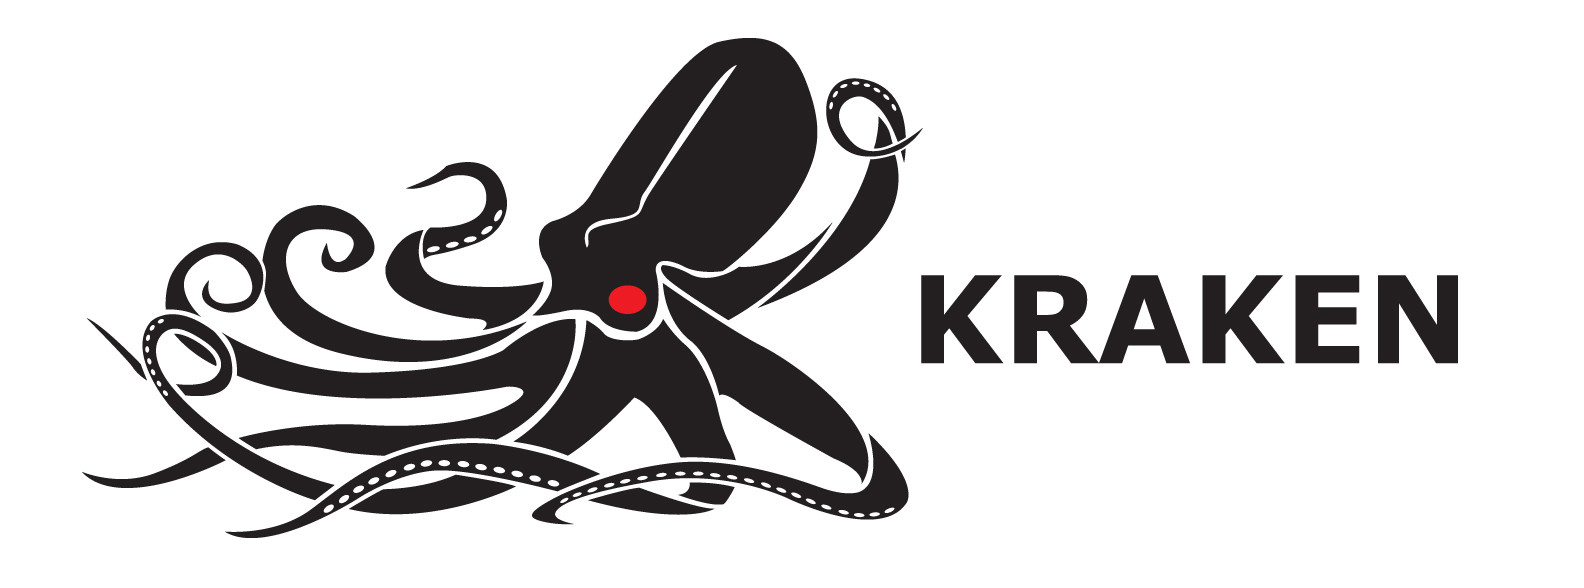 MEMBER NEWS: Kraken Announces Changes to Board of Directors